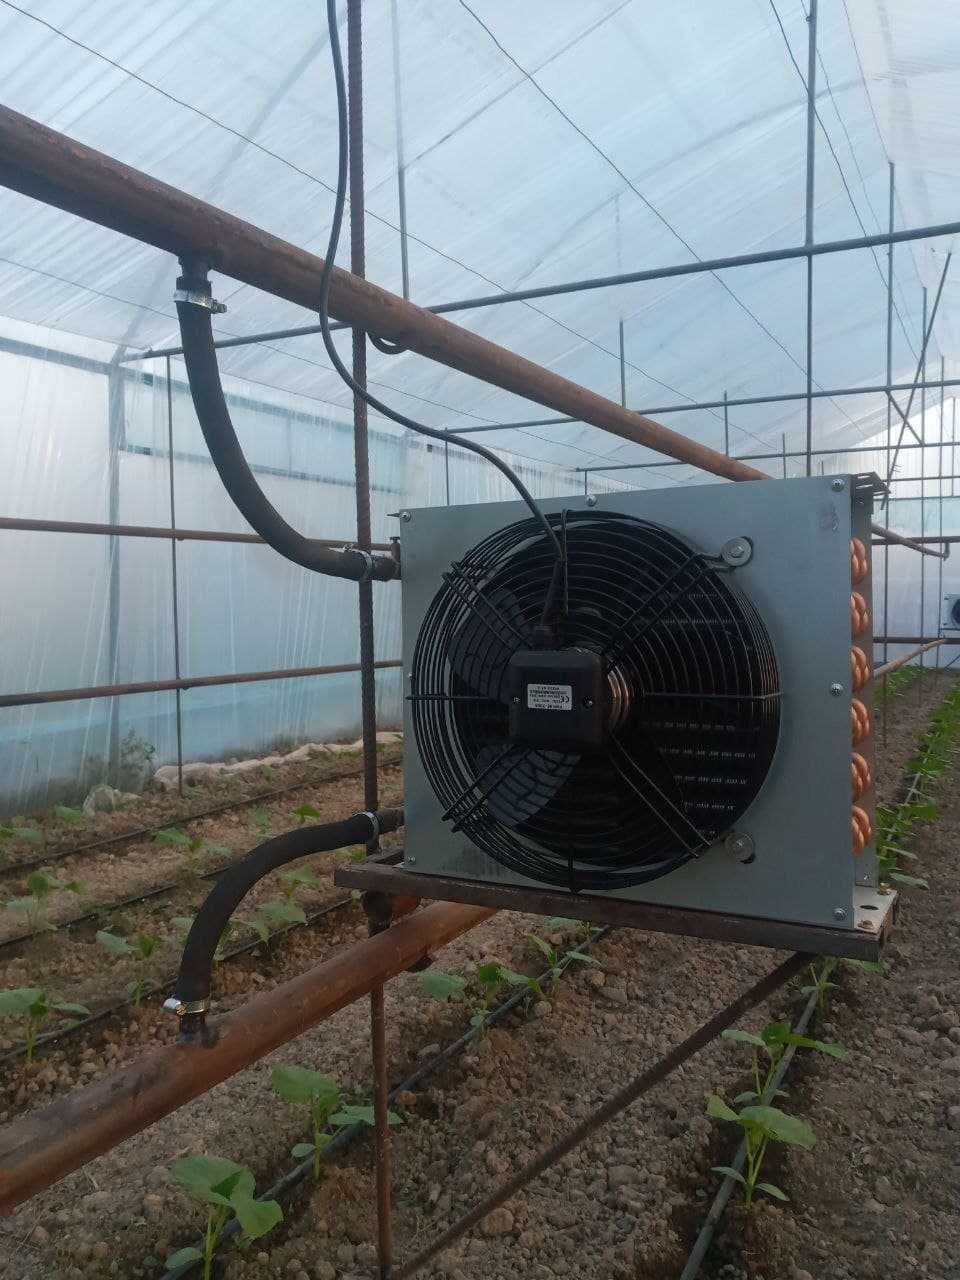 тепловентилятор (Водяной радиатор) teploventilyator. radiator